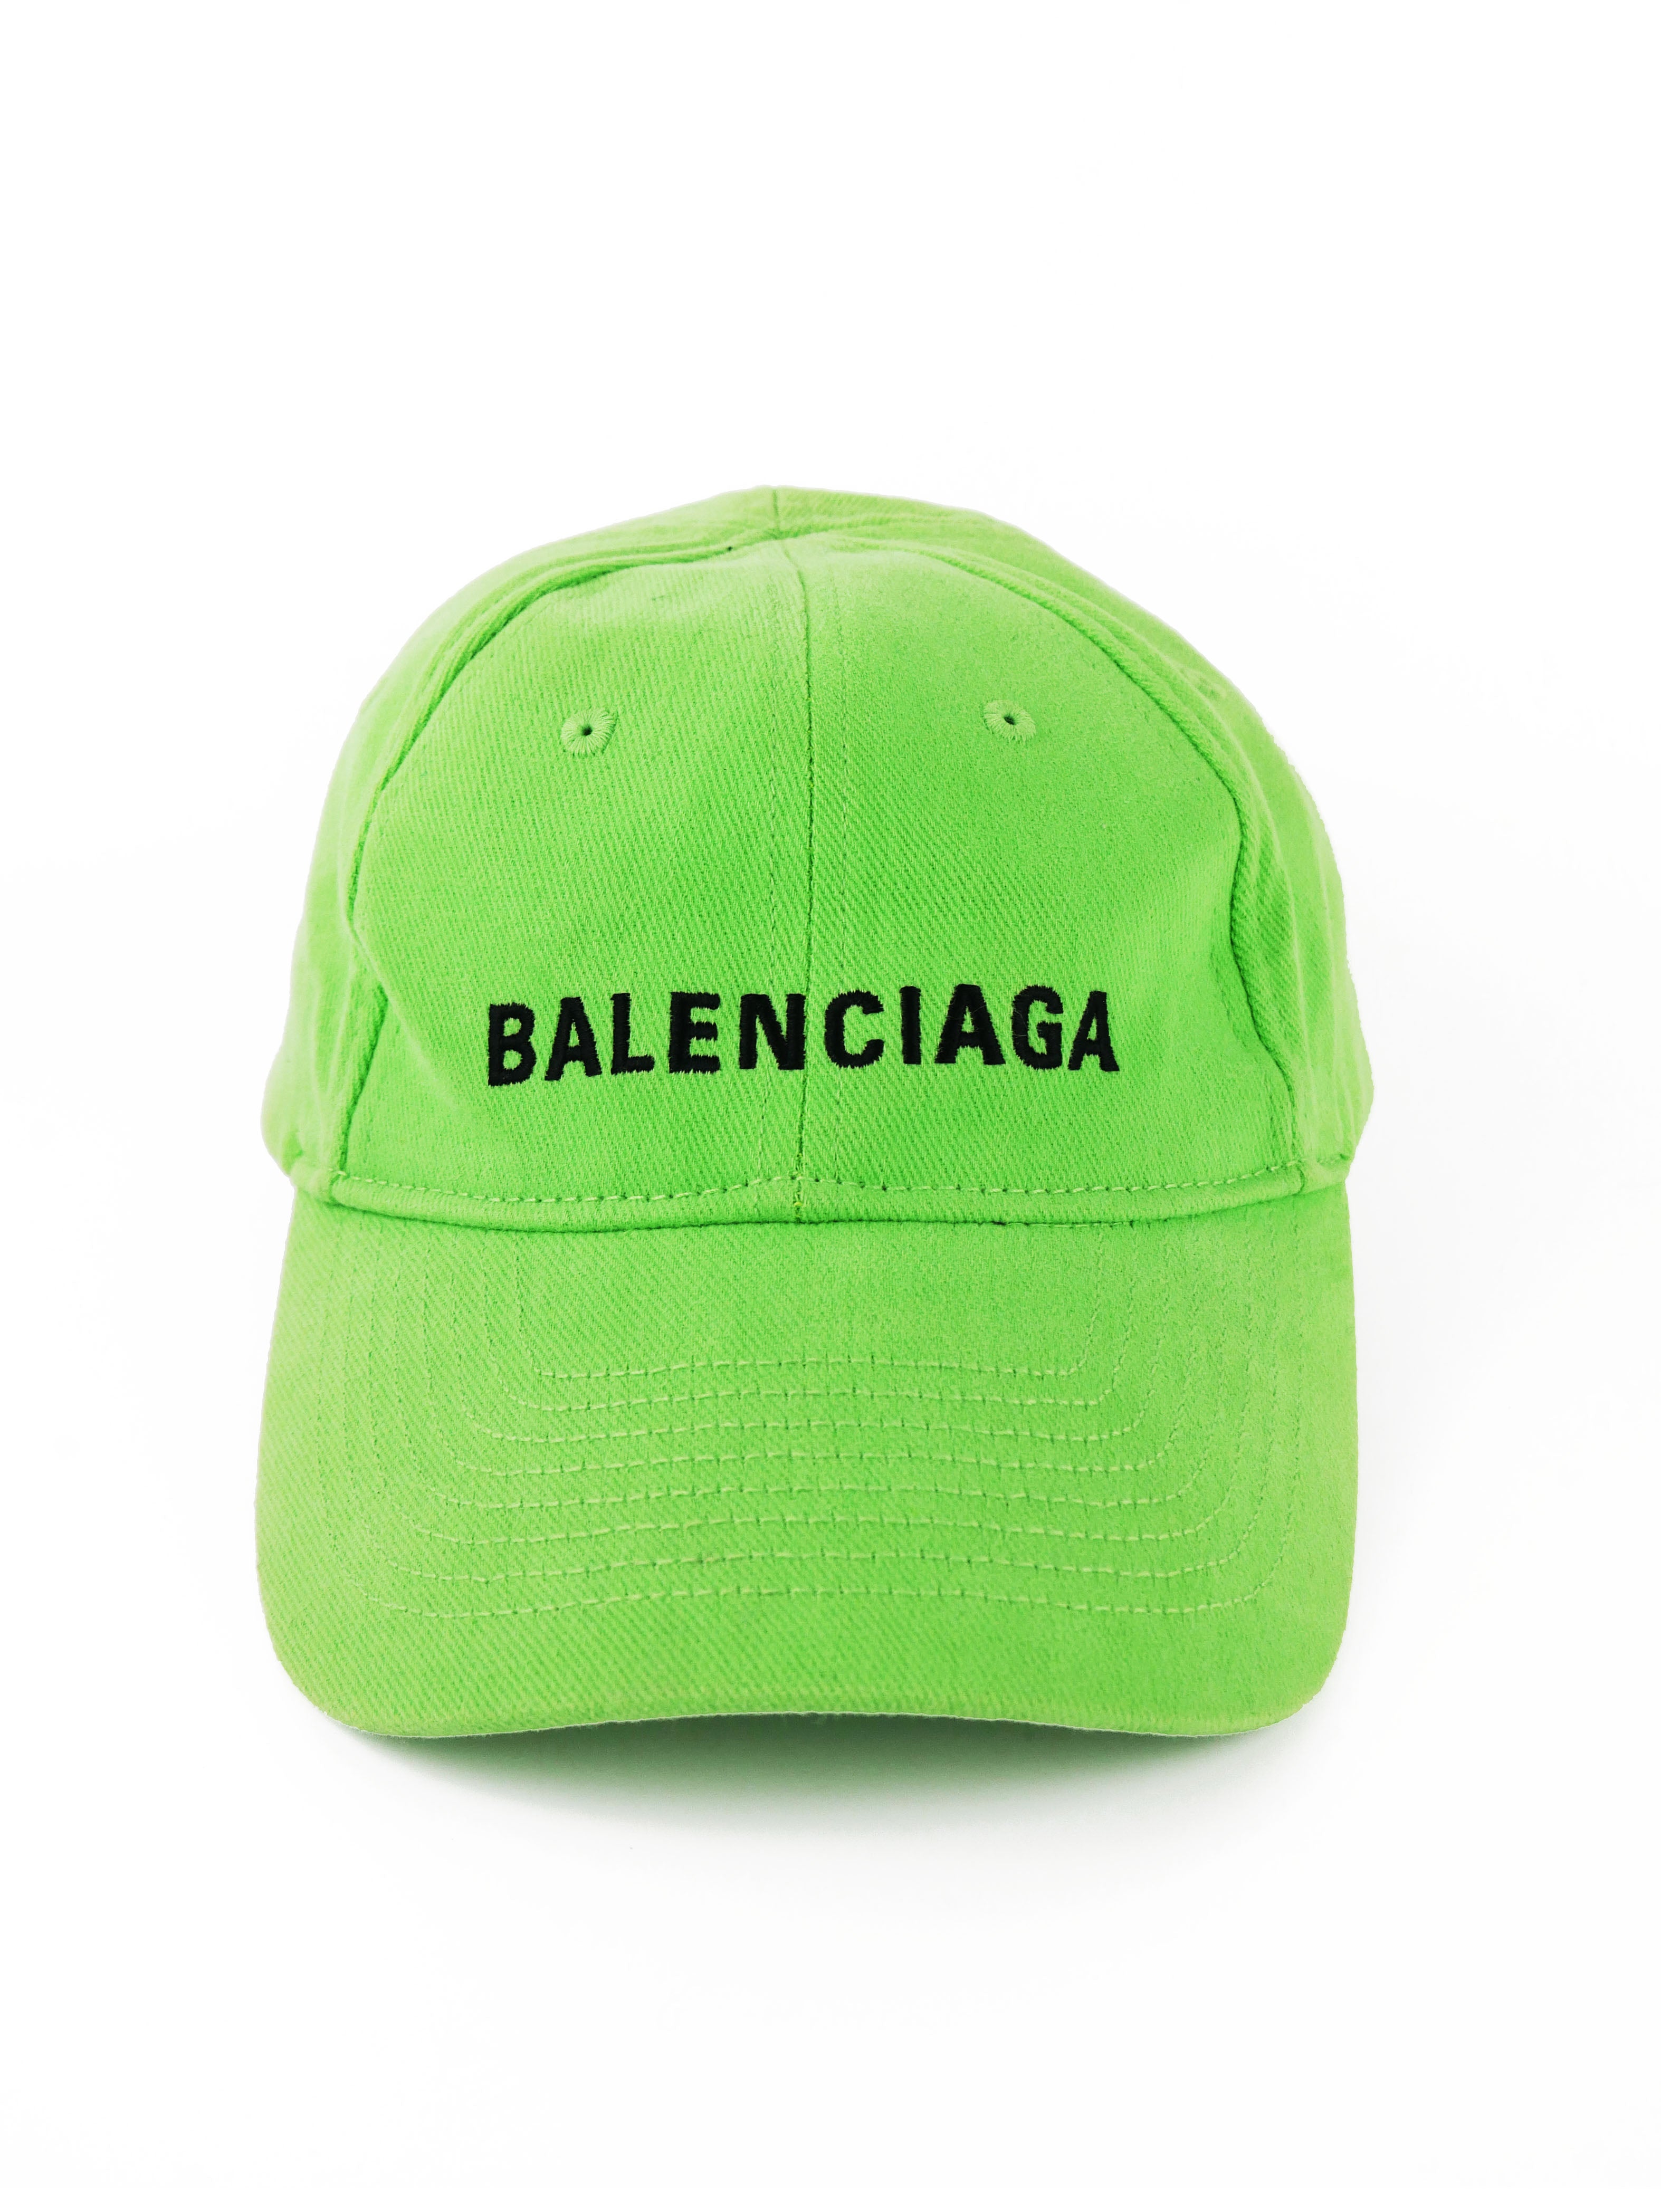 balenciaga-green-cap-4.jpg